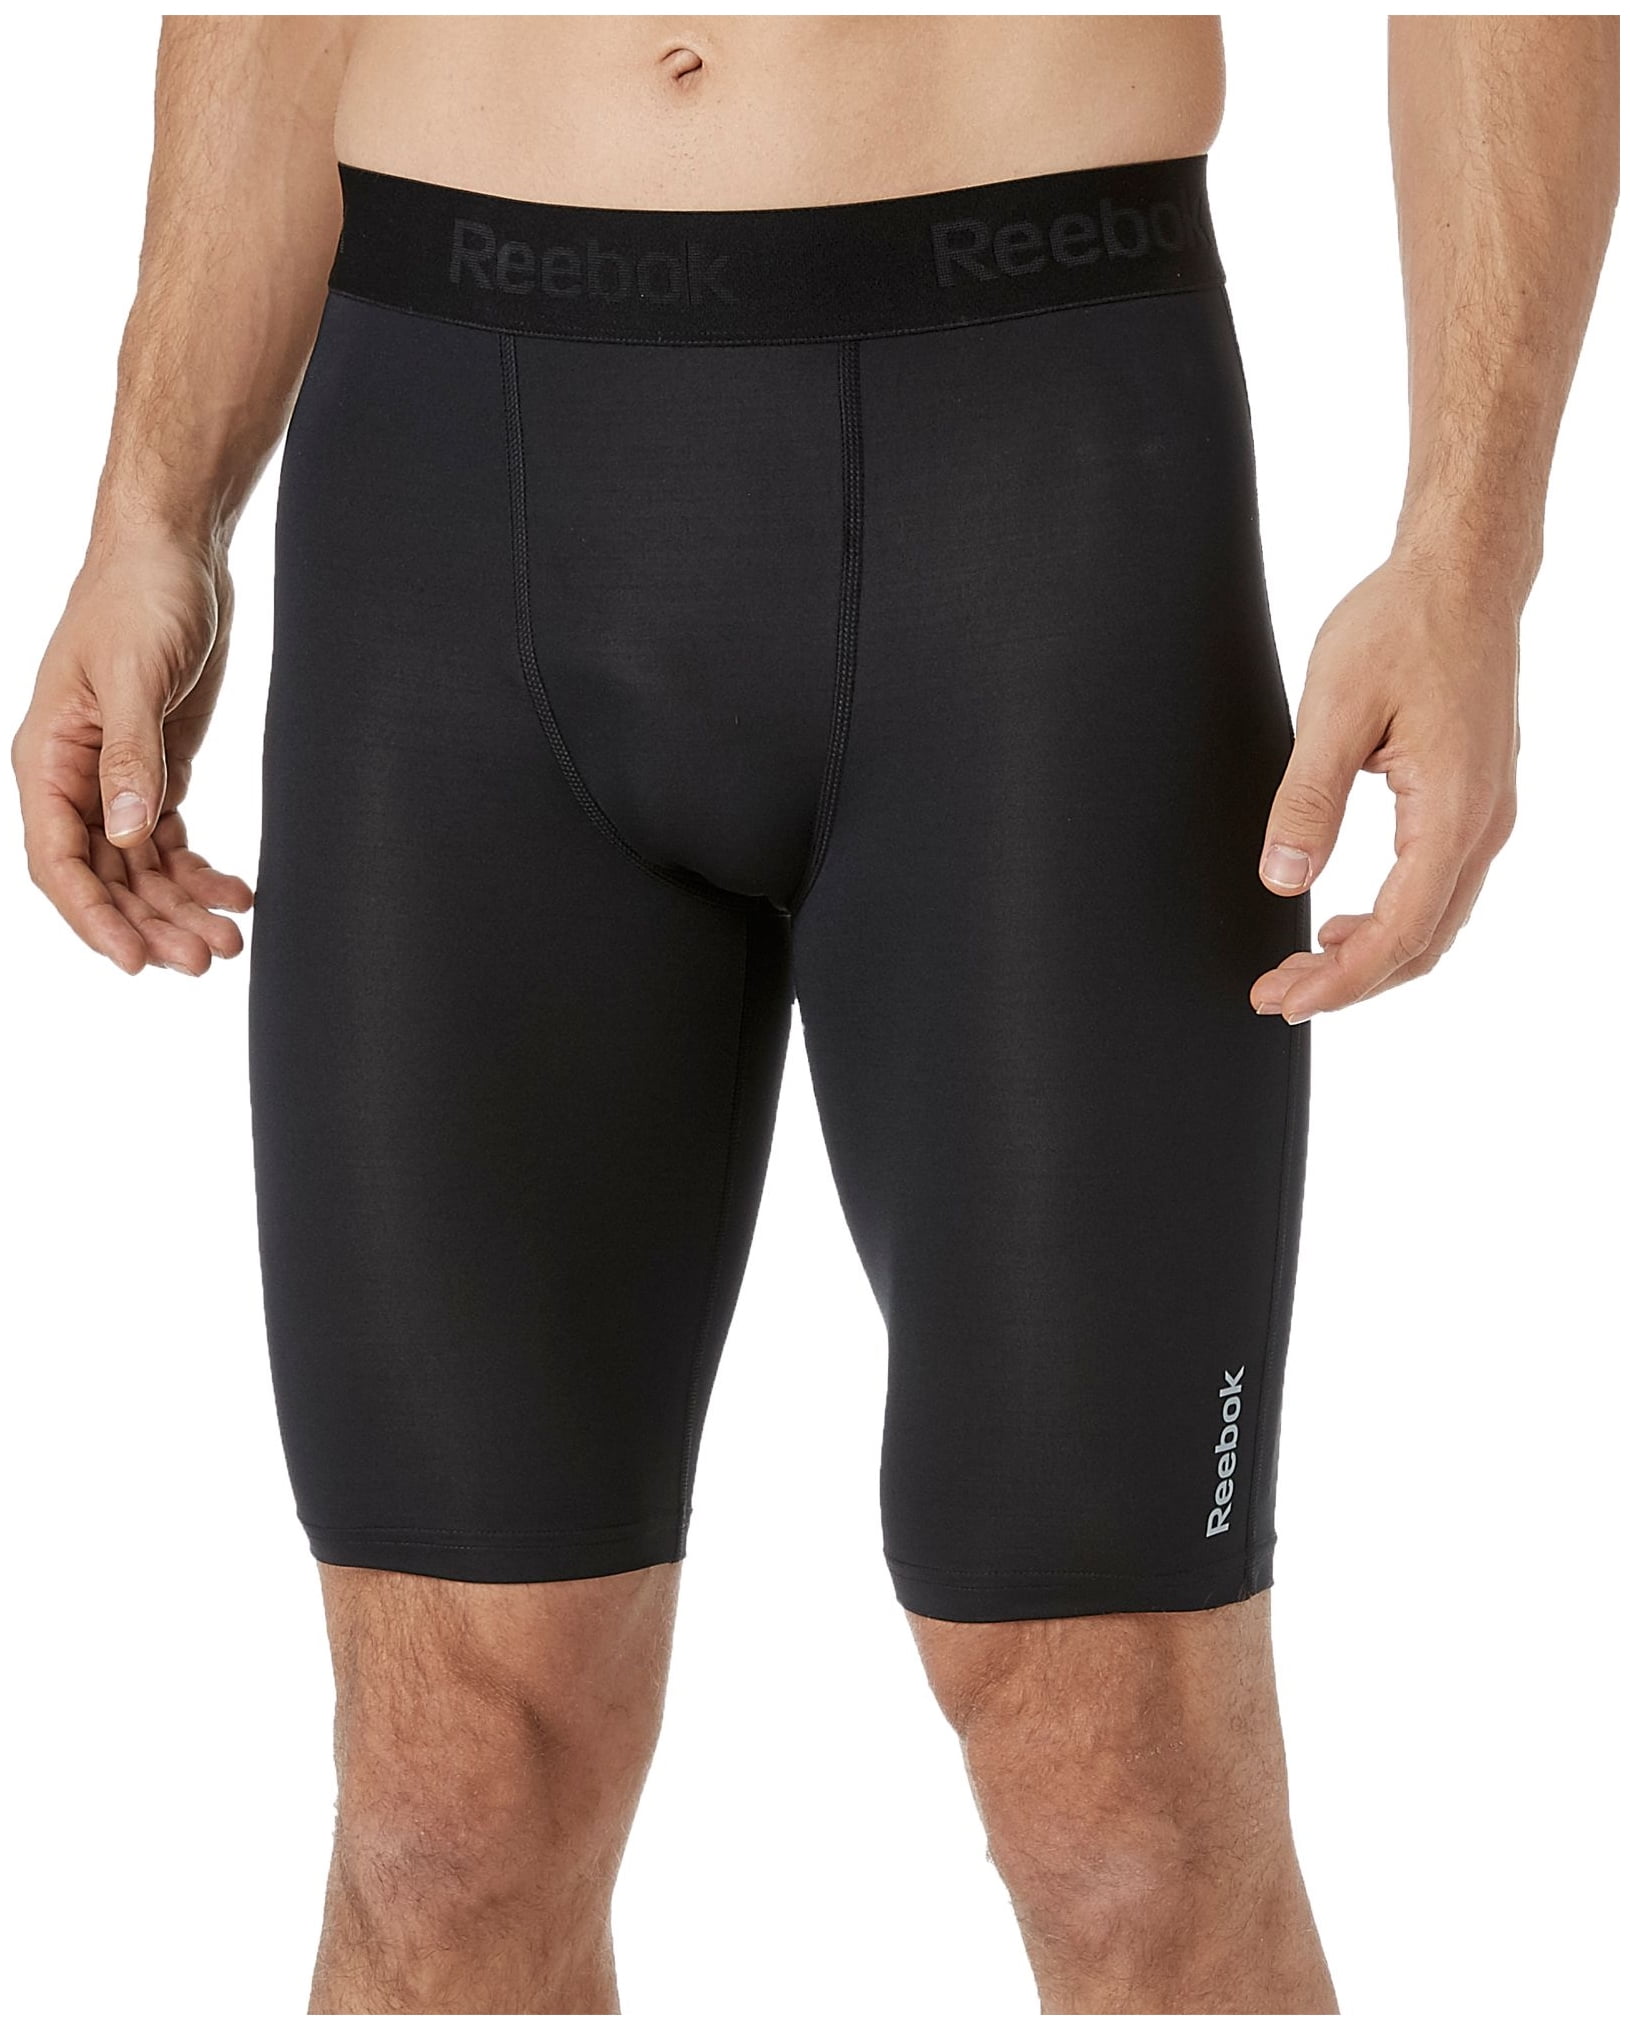 10'' compression shorts - Walmart.com 